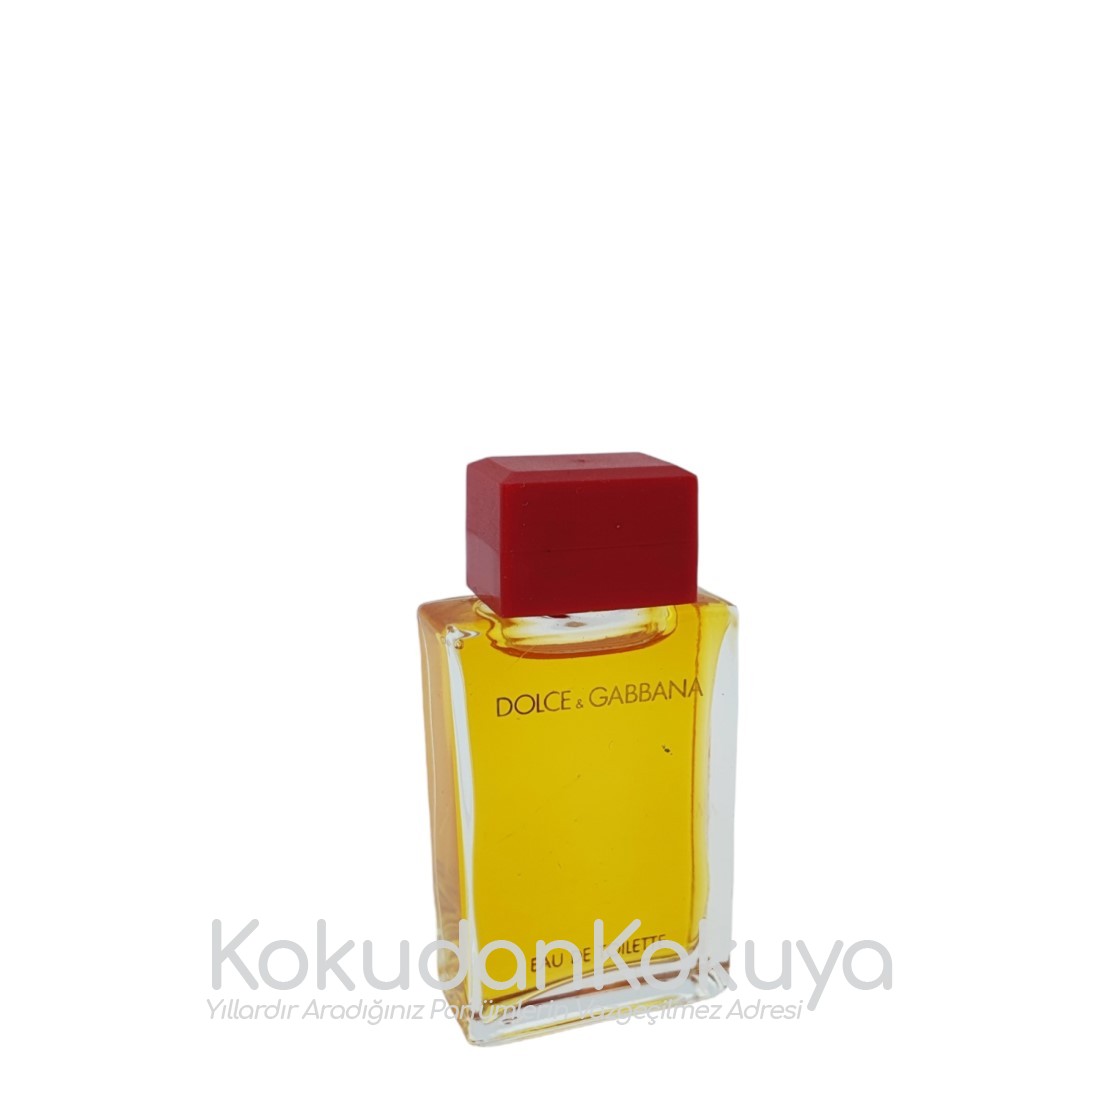 DOLCE GABBANA Pour Femme (Vintage) Parfüm Kadın 4.9ml Minyatür (Mini Perfume) Dökme 